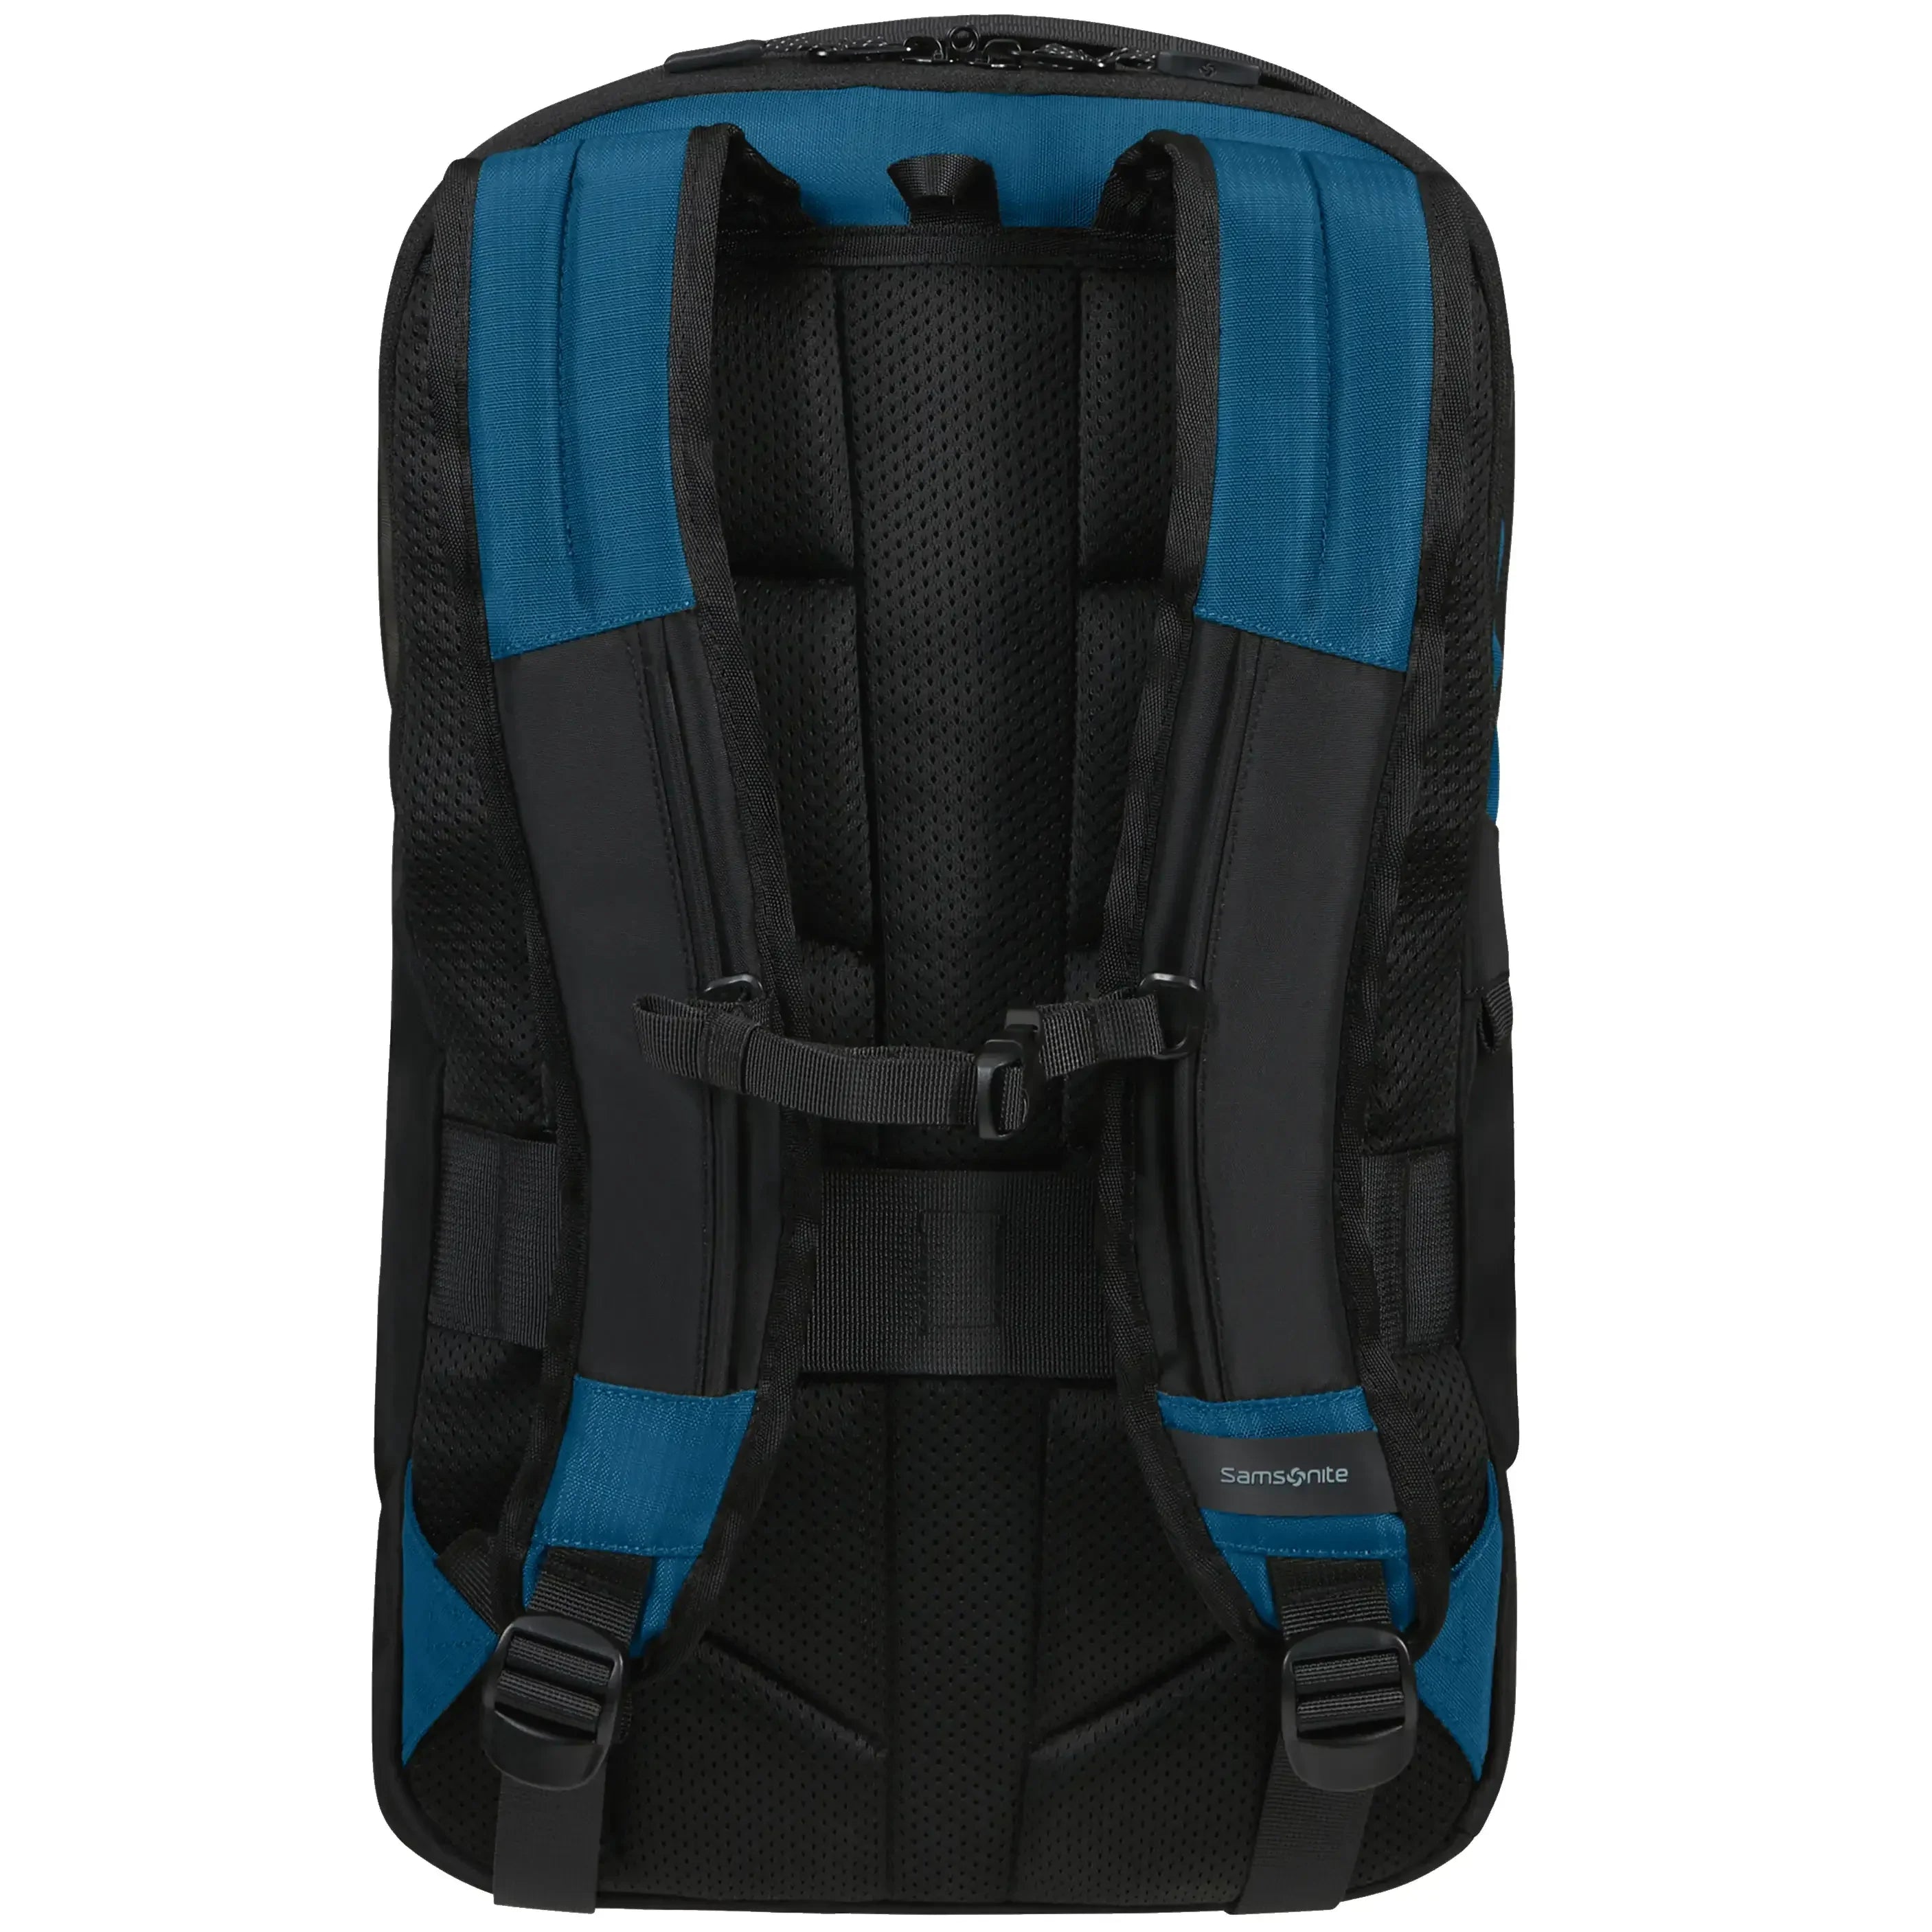 Samsonite Dye-Namic Backpack M 45 cm - blue